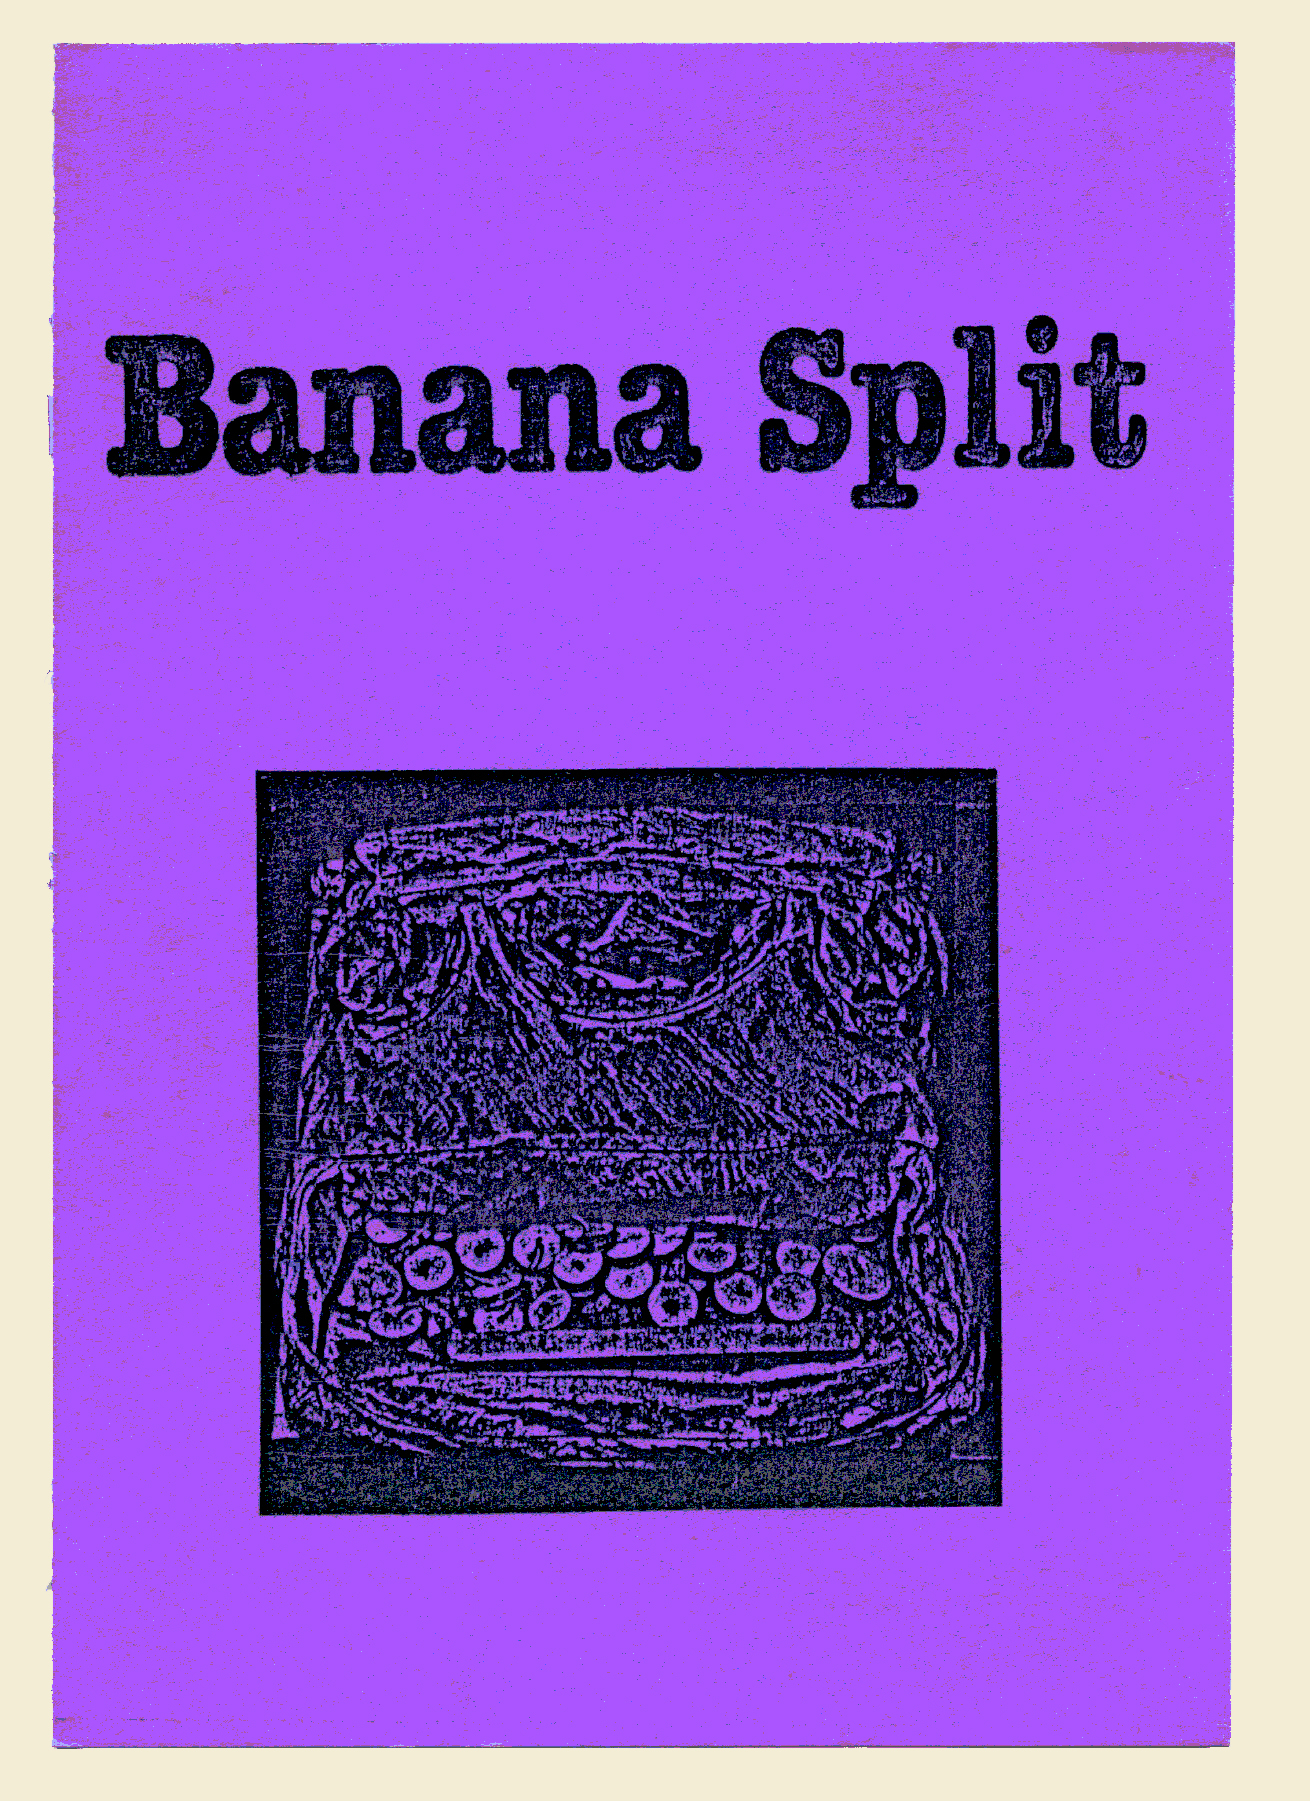 *Banana Split*, (Revue) Liliane Giraudon, Jean Jacques Viton